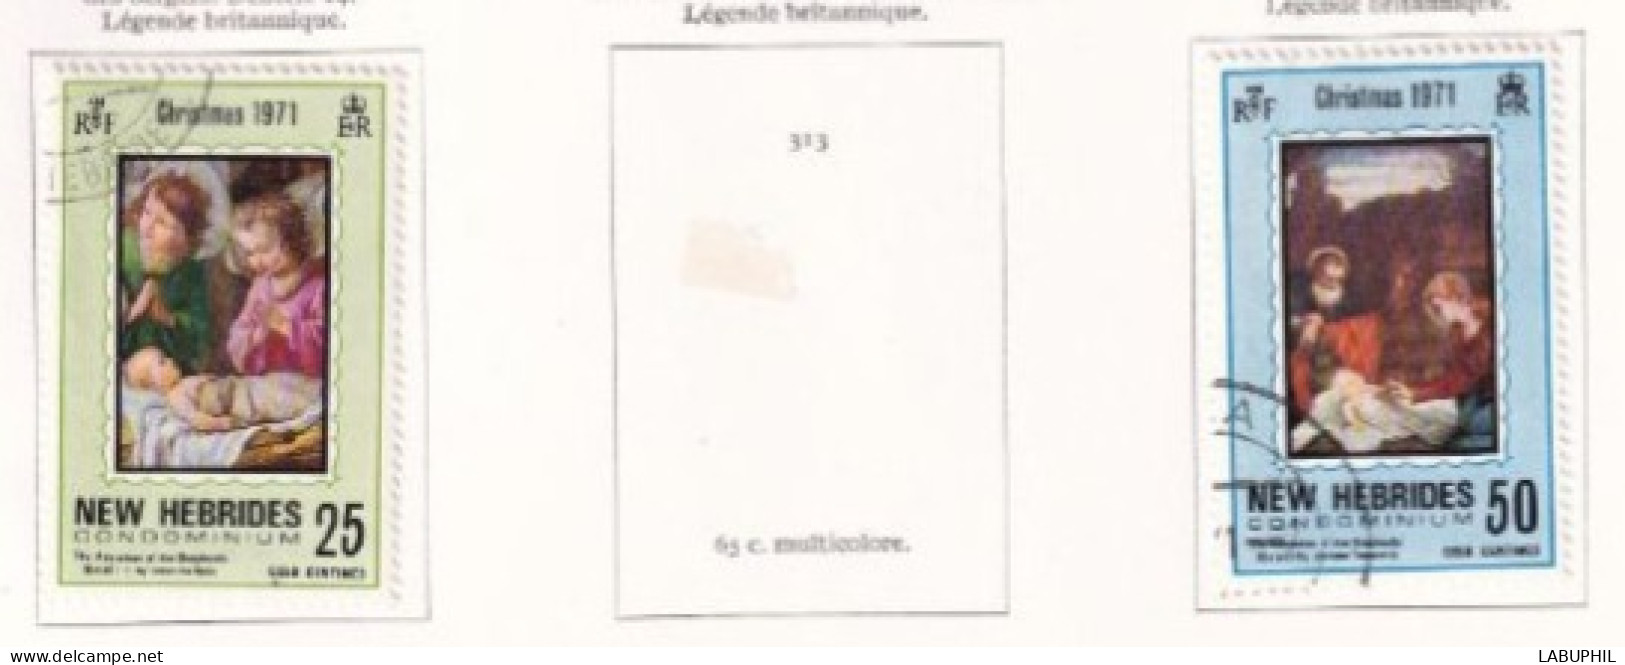 NOUVELLES HEBRIDES Dispersion D'une Collection Oblitéré Et Mlh   1971 - Usados